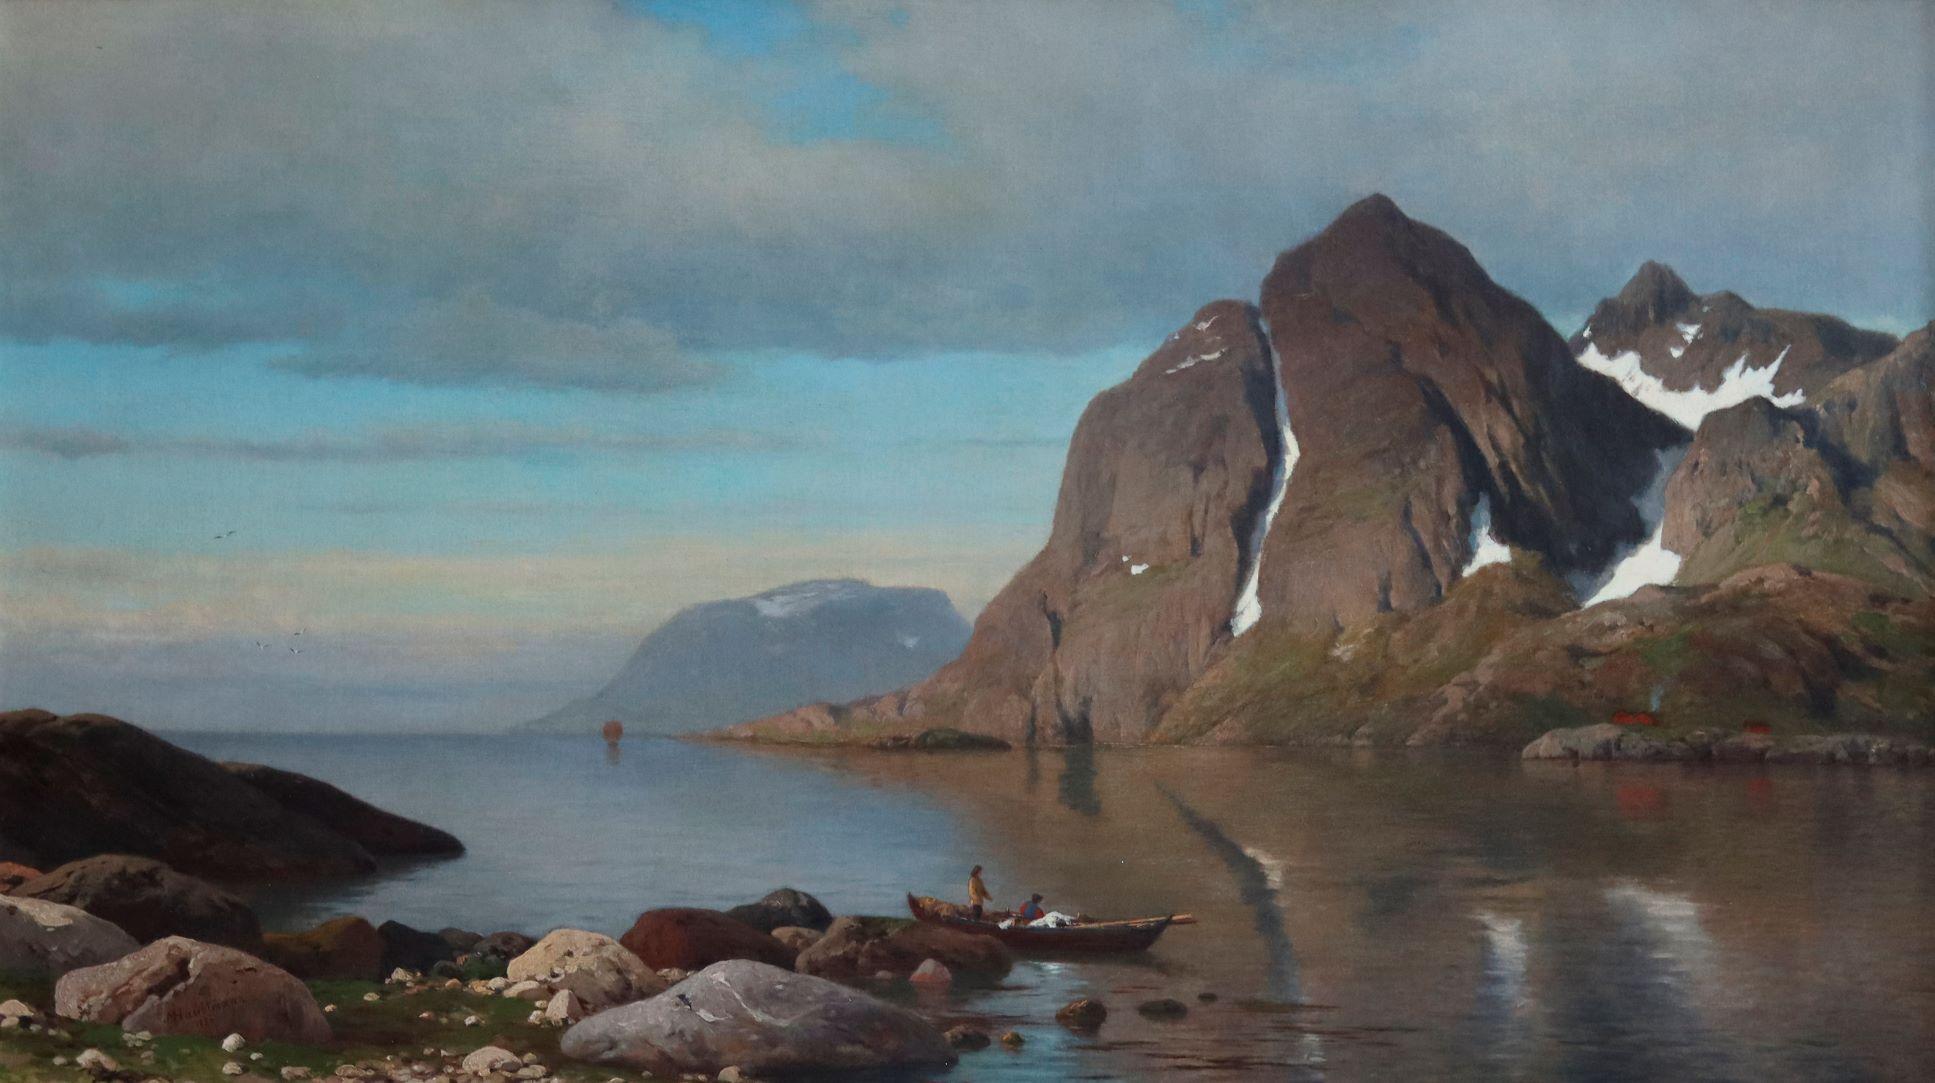 Cape du Nord, Norvège                                                           - Painting de Michael Haubtmann